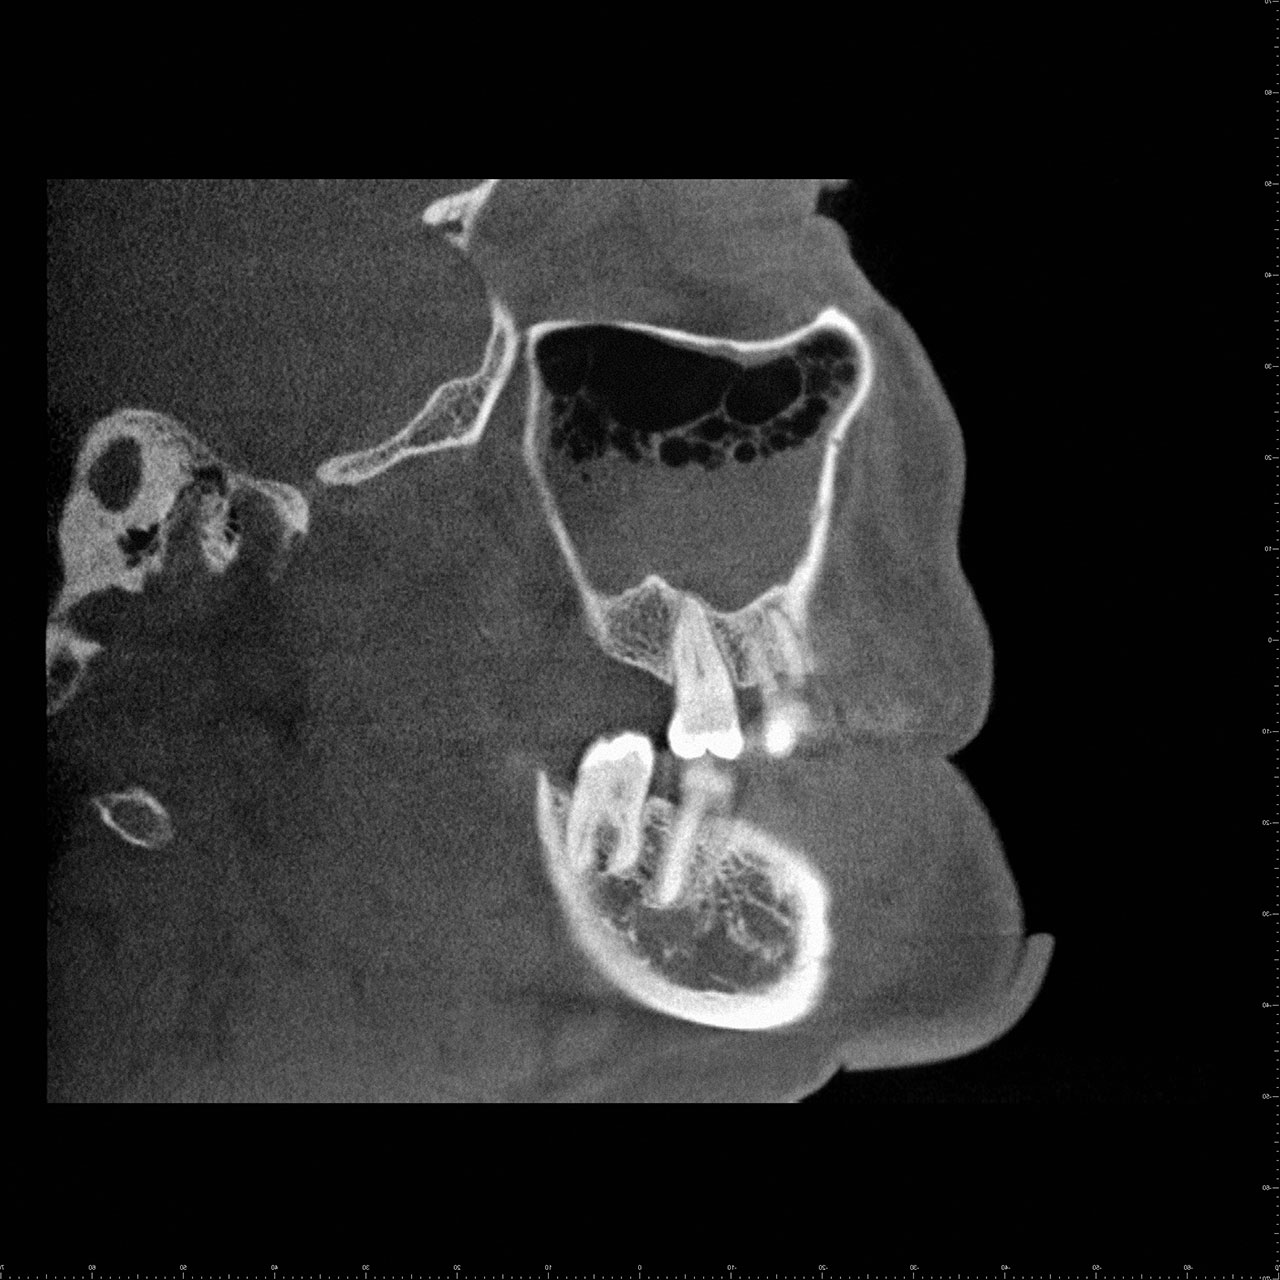 Abb. 12 bis 15: 45-jährige Patientin mit einer beidseitigen (rhinogenen) Sinusitis. In den DVT-Schnittbildern lassen sich in der linken Kieferhöhle eine Spiegelbildung (Luft-Flüssigkeitsspiegel) und rechts Luftblasen erkennen (sagittaler Schnitt der rechten Kieferhöhle; ...